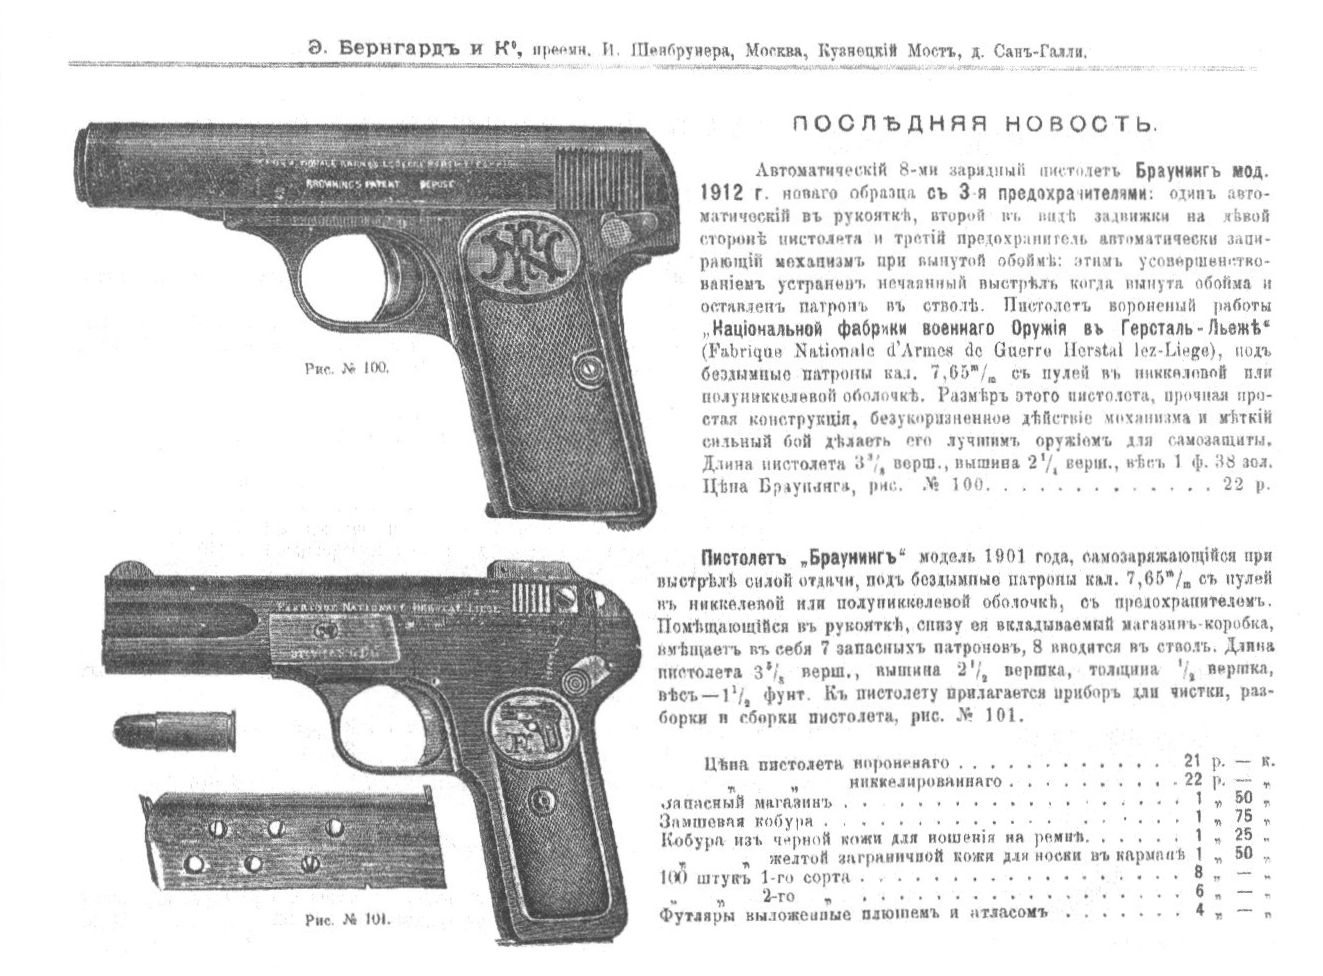 Ил. 6. Пистолеты Браунинга в прейскуранте Э. Бернгард и Ко, 1913 г.